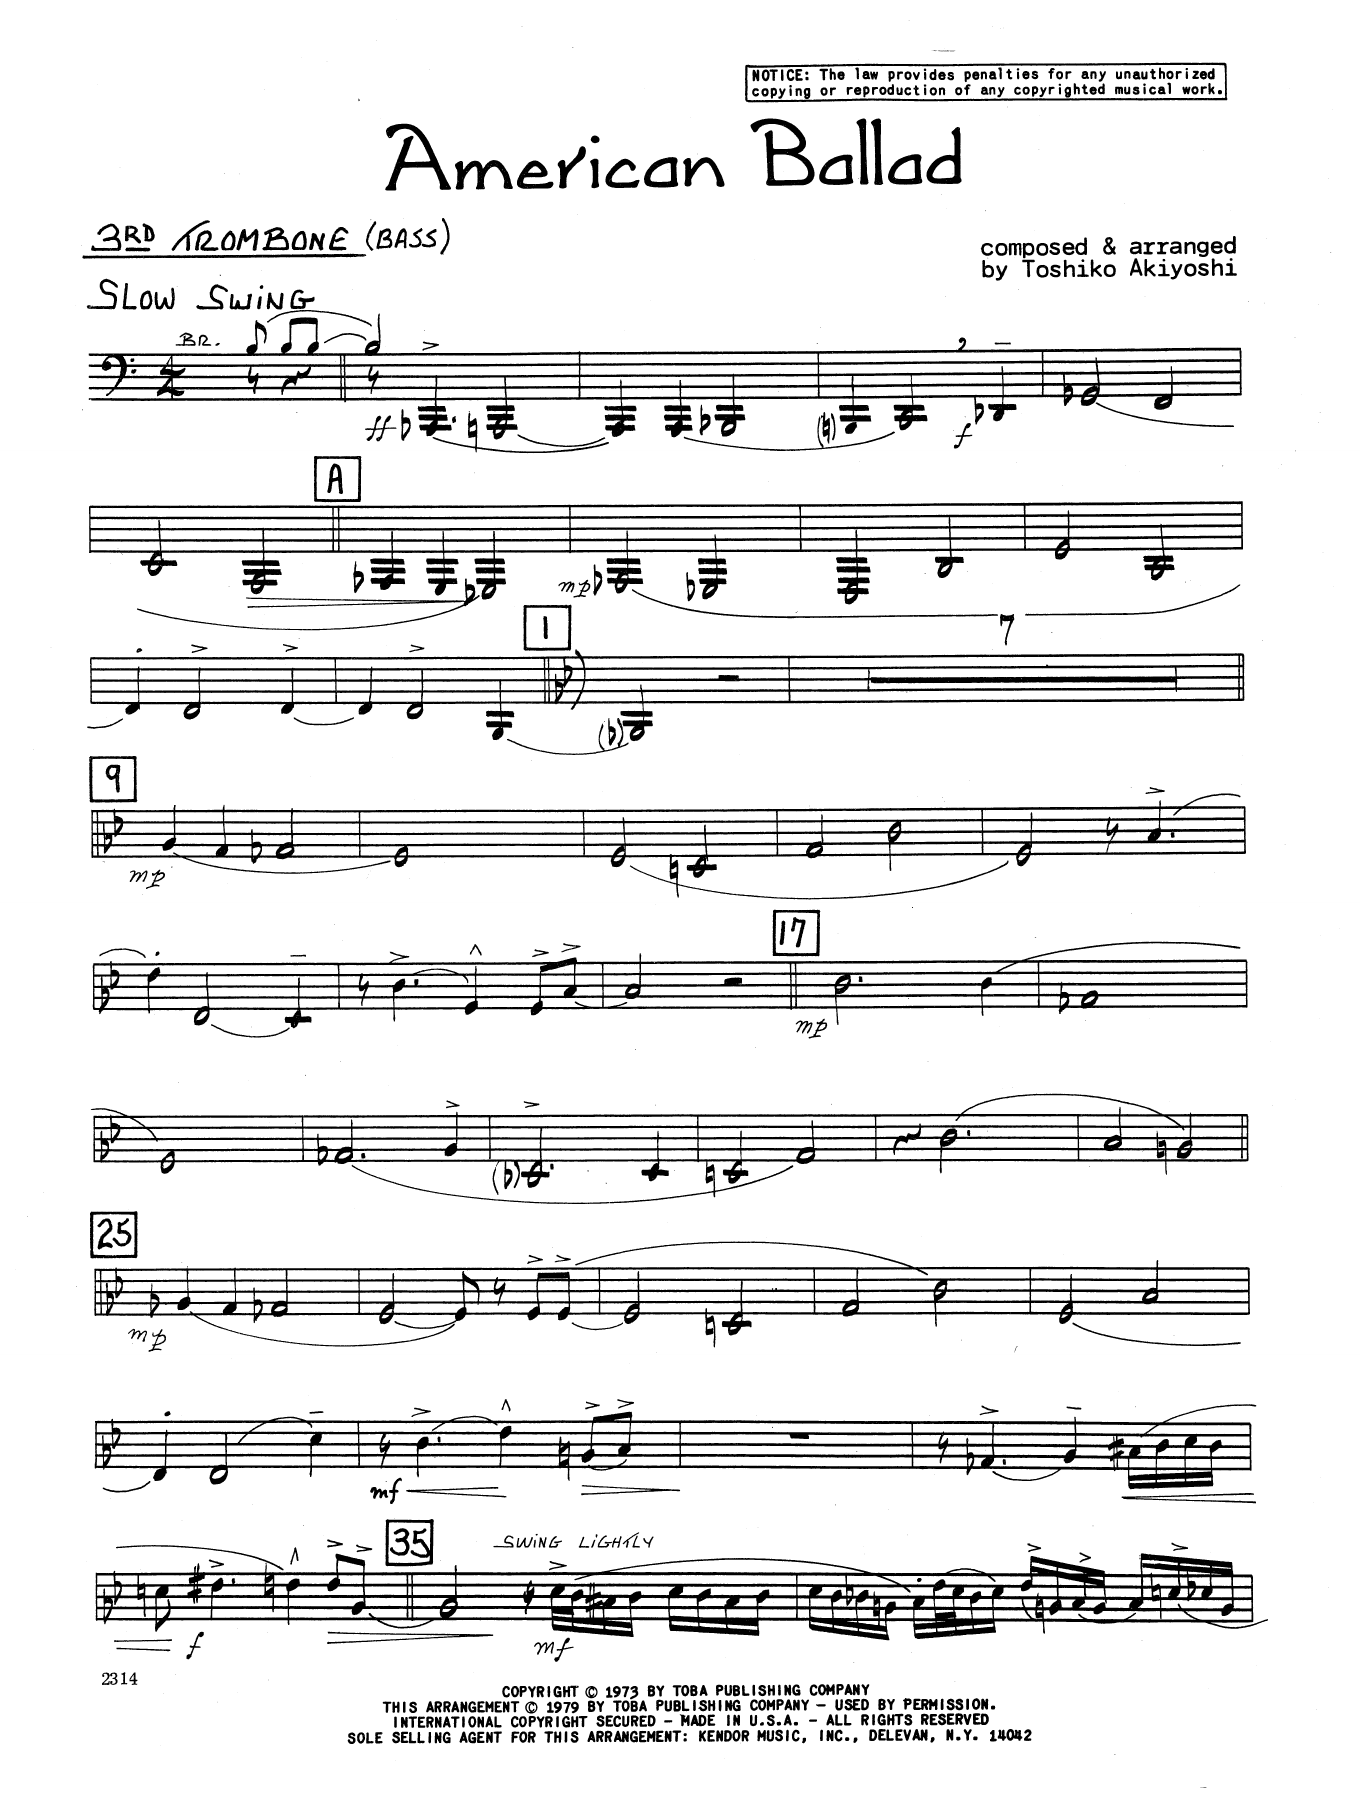 Download Toshiko Akiyoshi American Ballad - 3rd Trombone Sheet Music